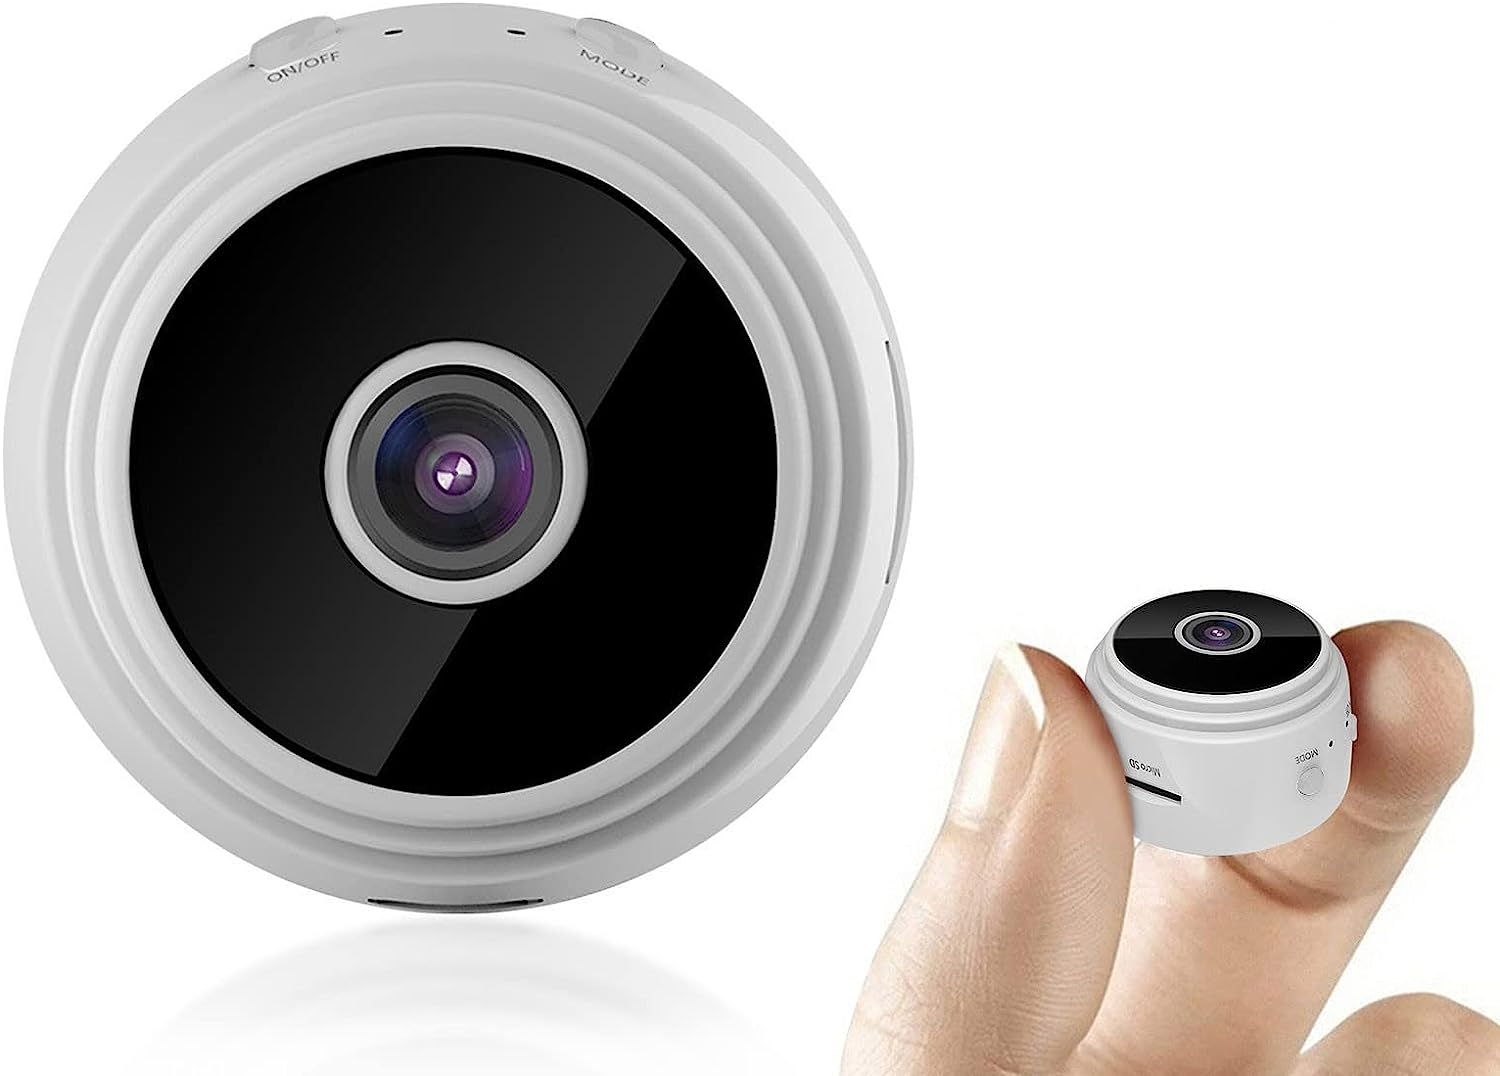 Mini caméras espion sans fil autonomes : ce qu'il faut savoir